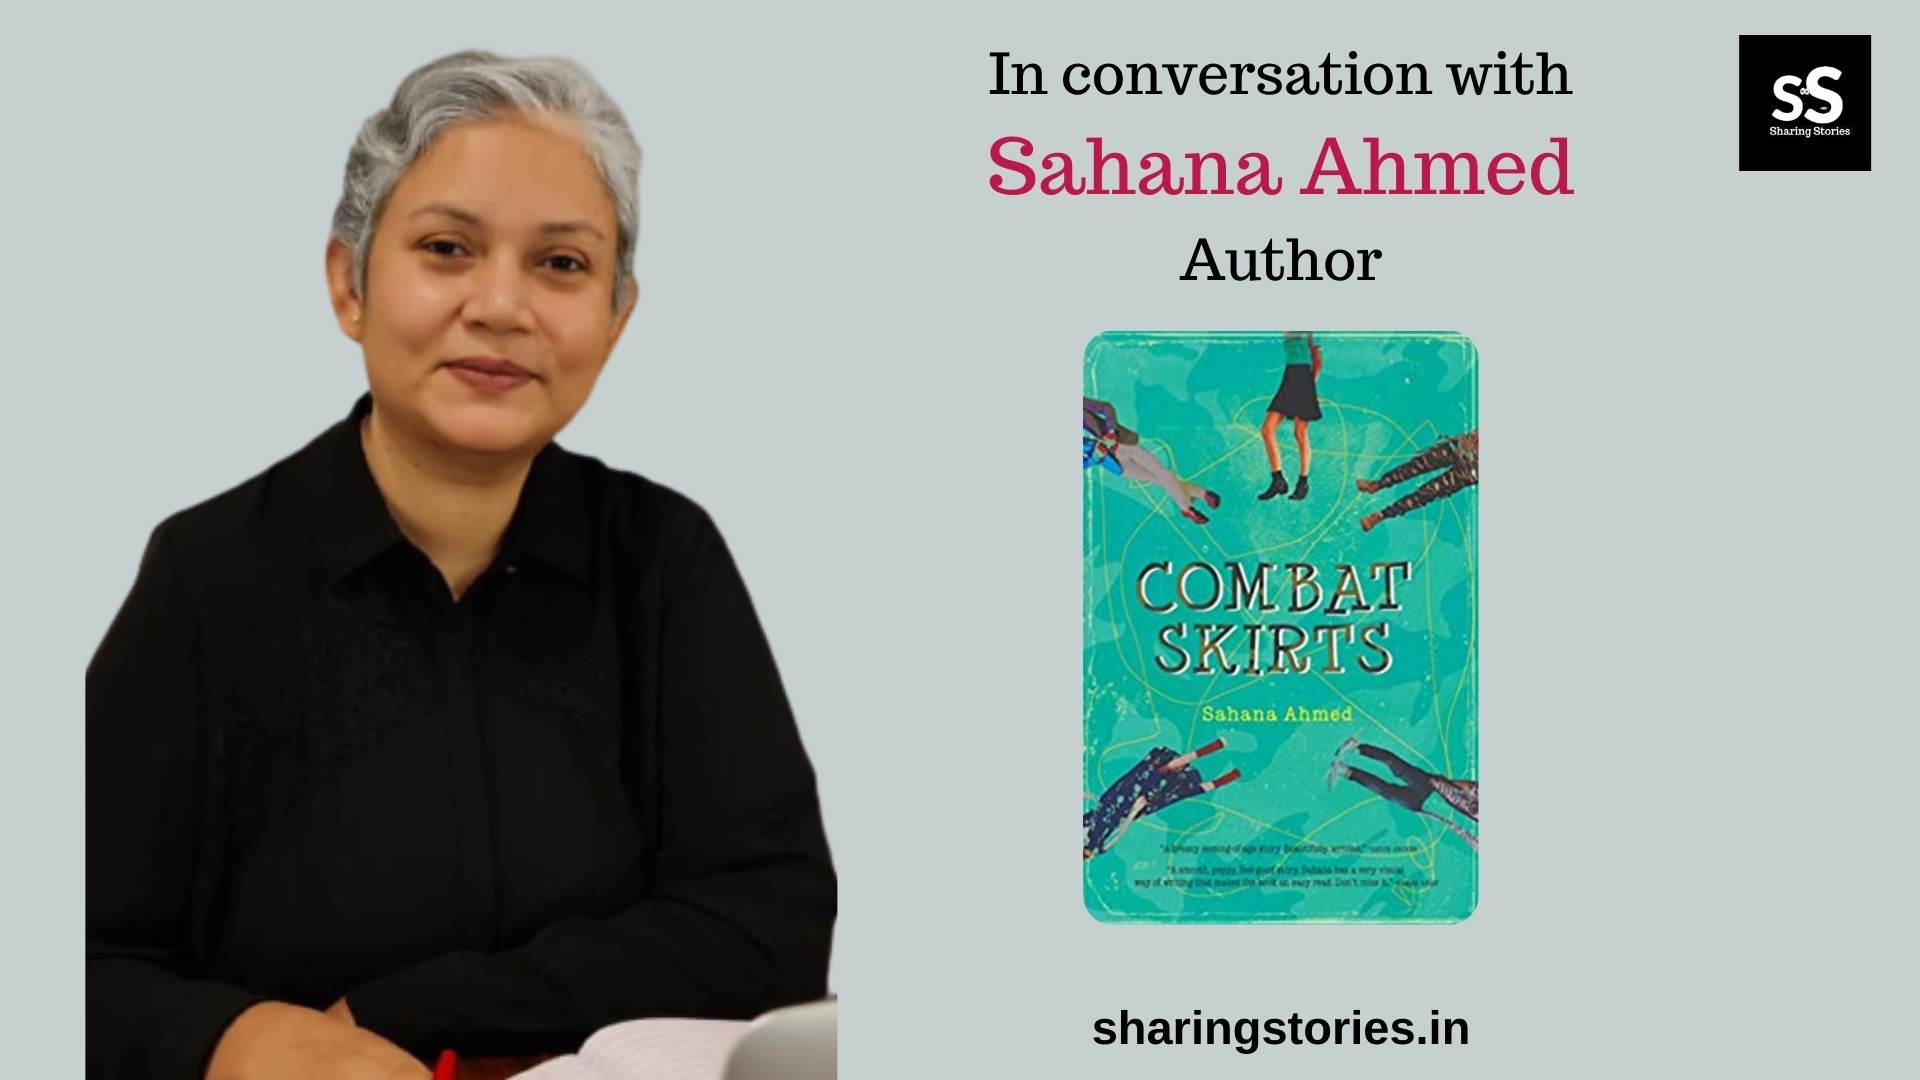 Author Sahana Ahmed